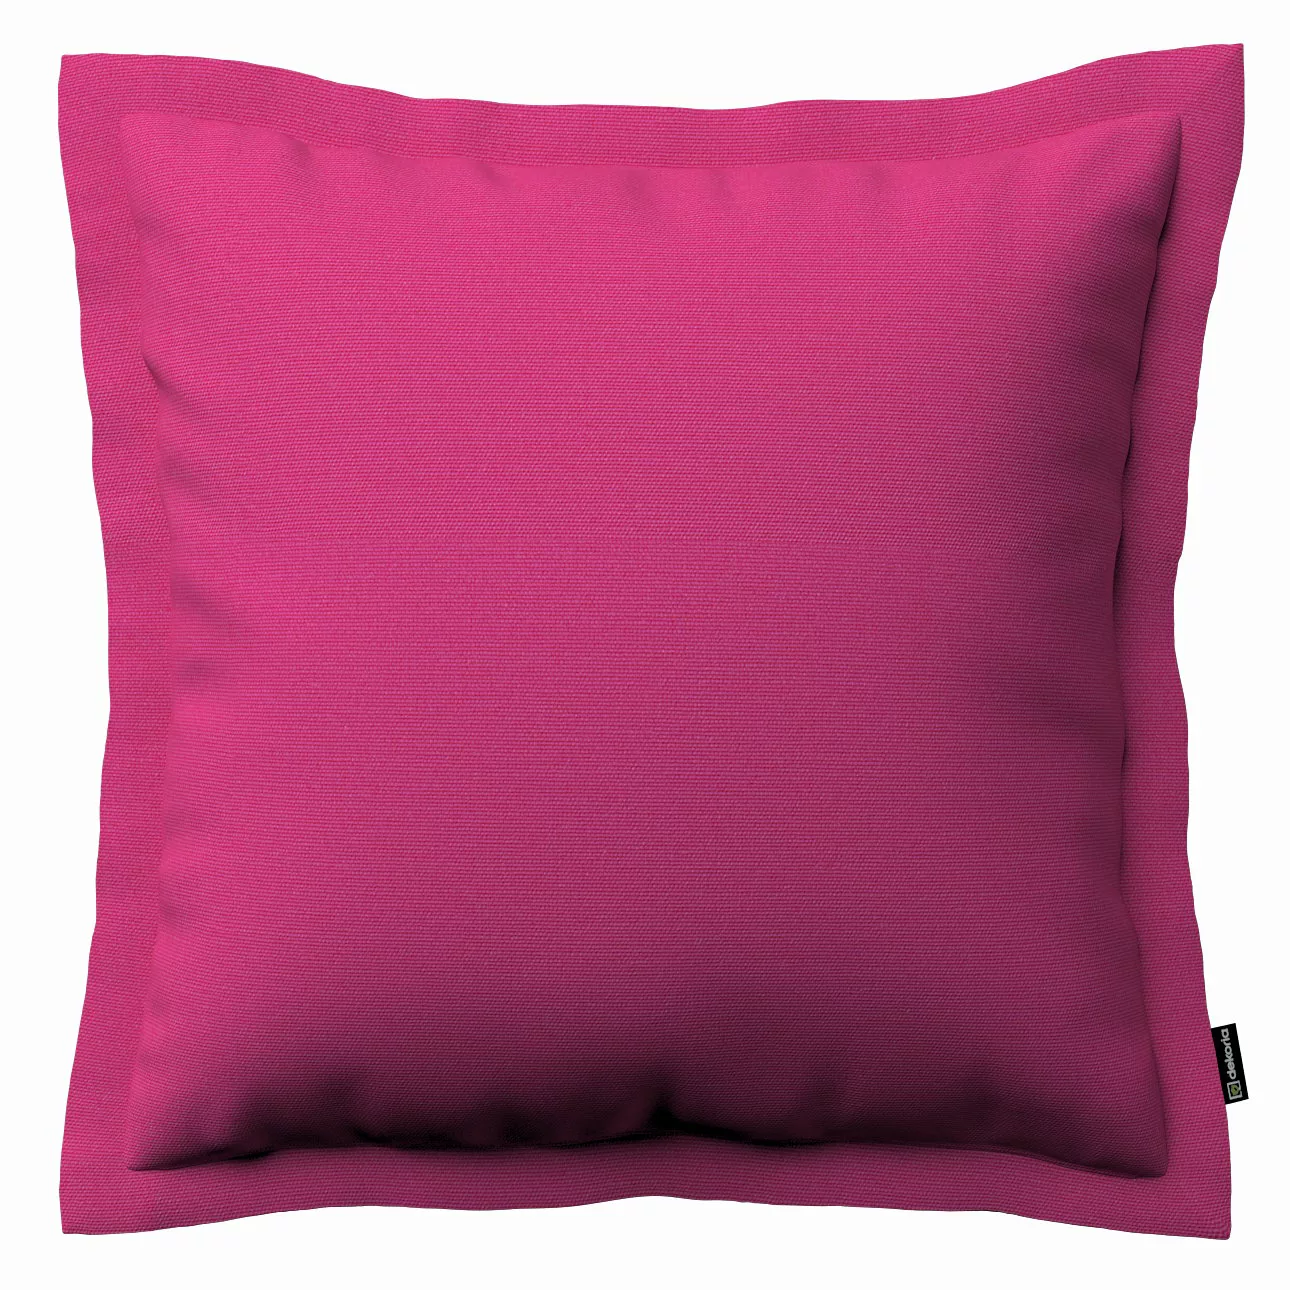 Kissenhülle Mona mit Stehsaum, rosa, 45 x 45 cm, Loneta (133-60) günstig online kaufen